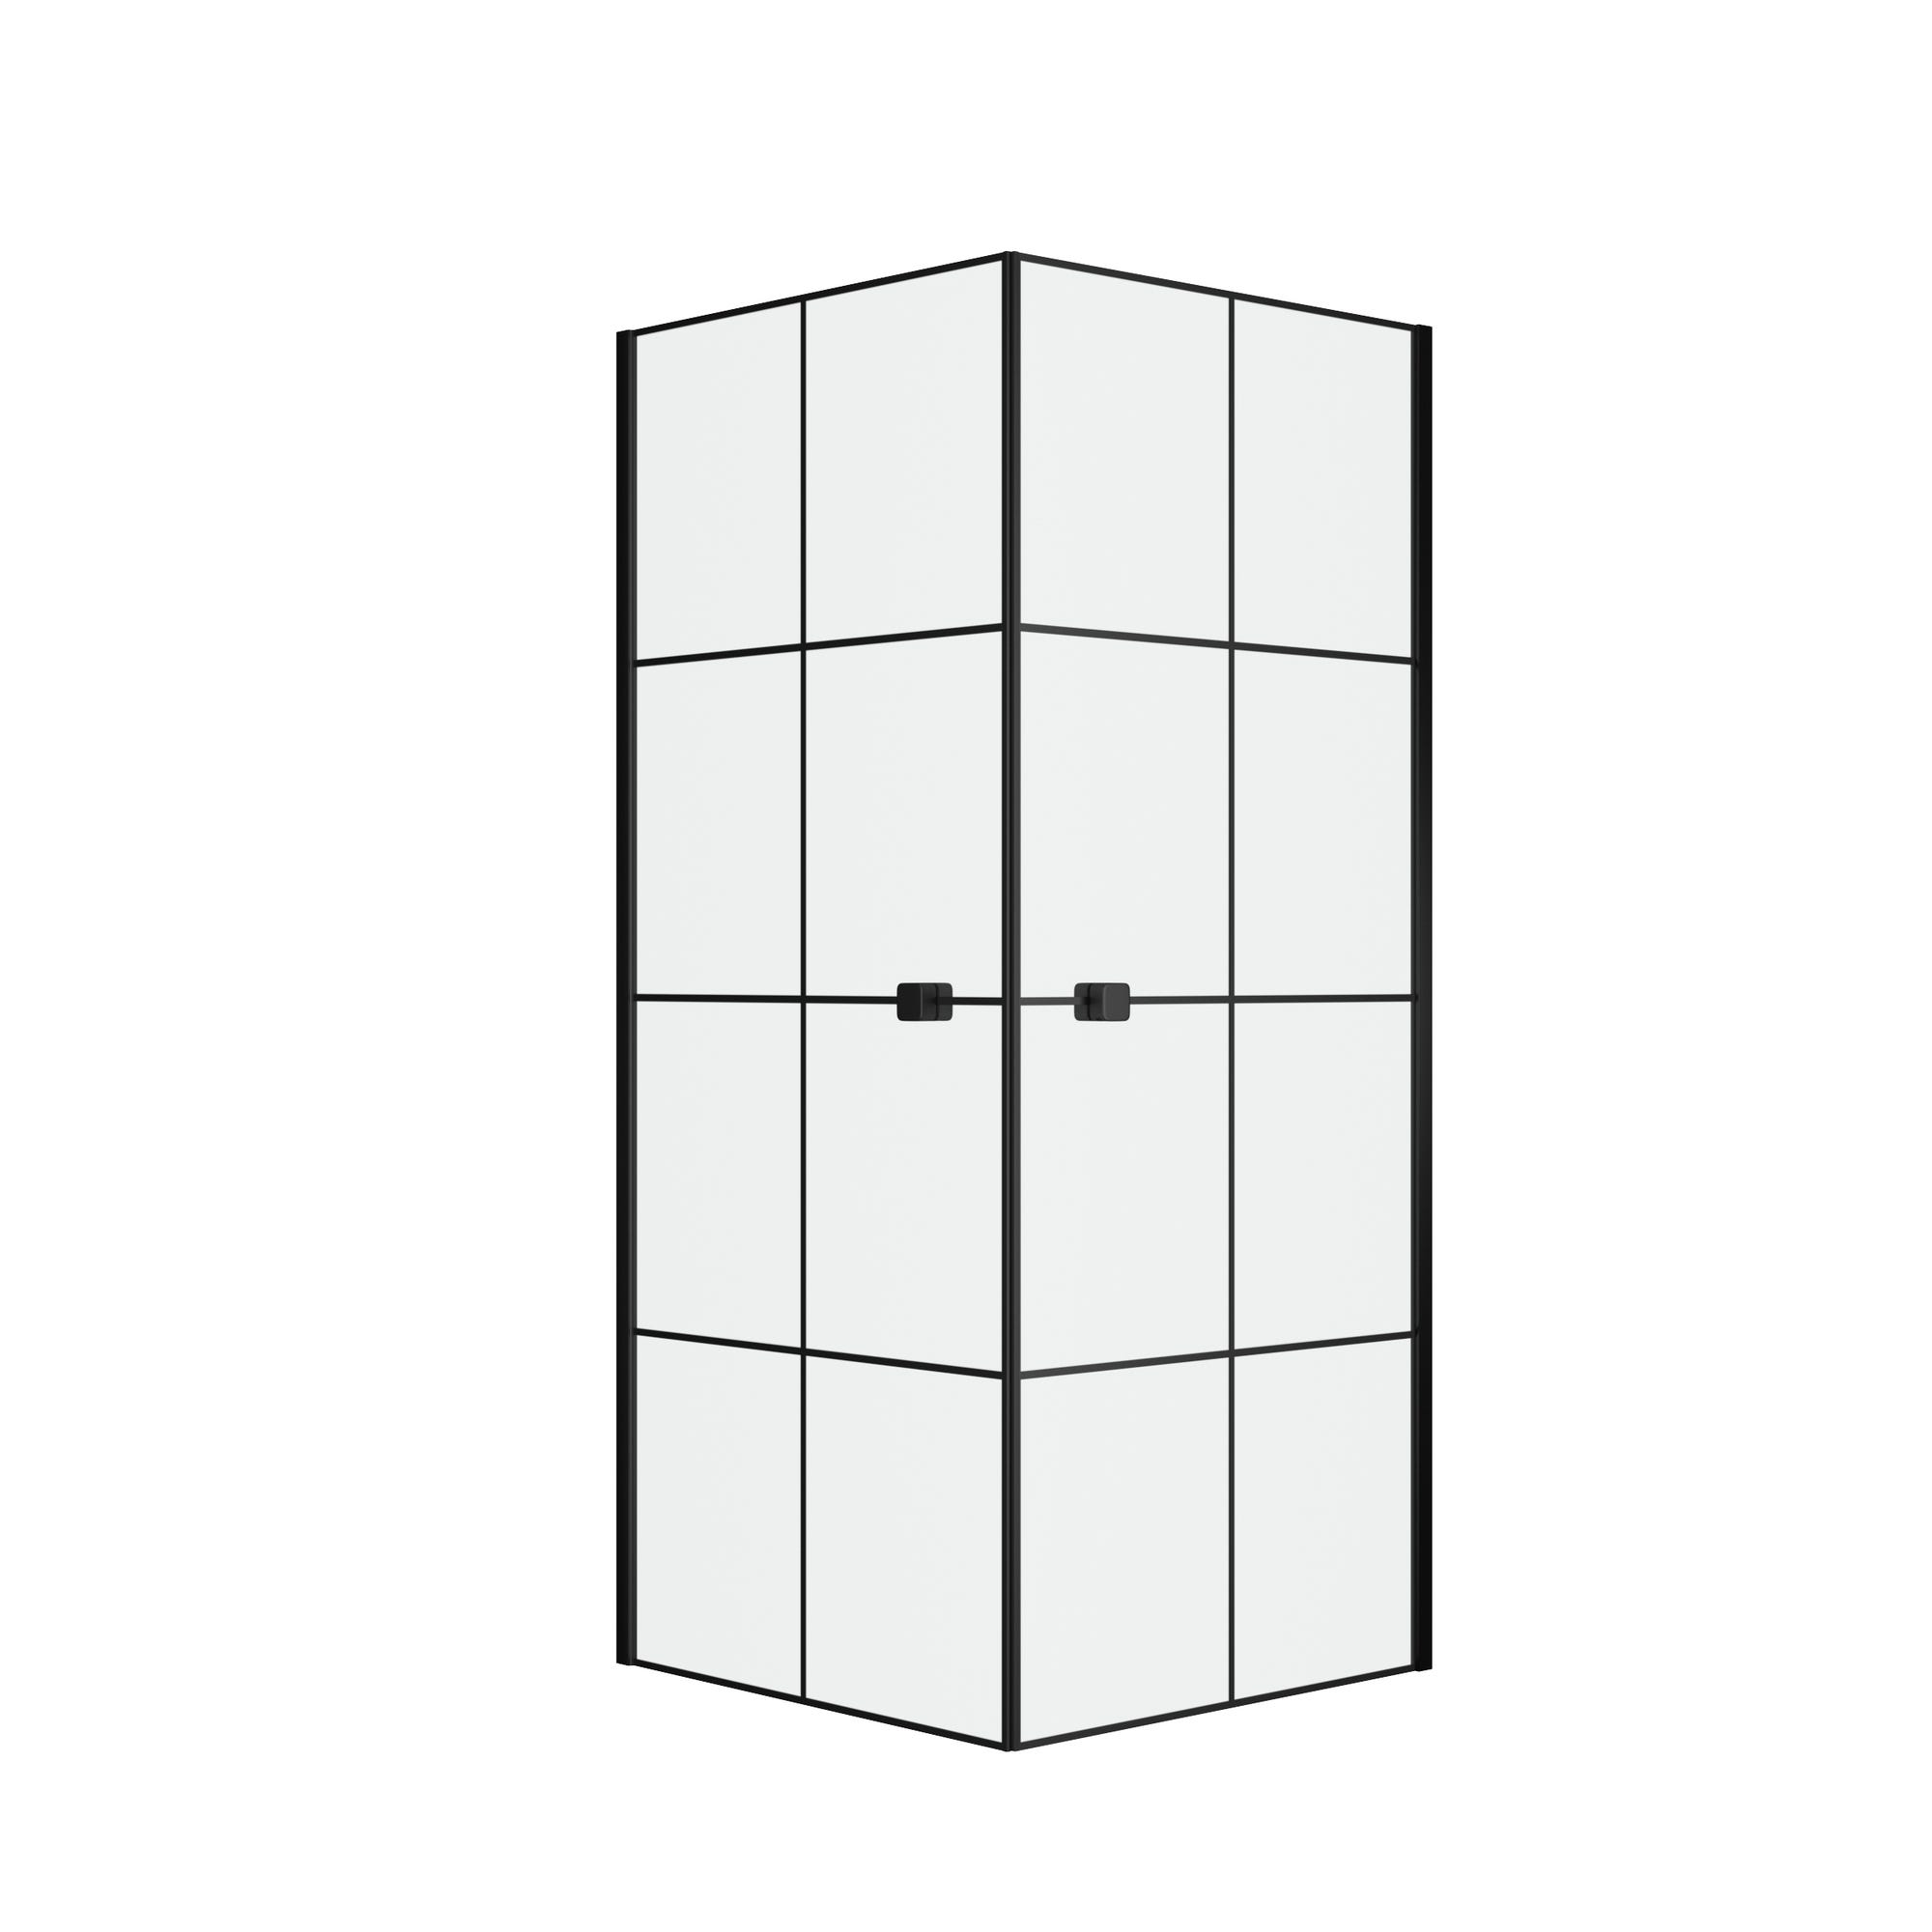 Portes de Douche en Angle 80x80x190 cm - Motifs carrés - Profilés Noir Mat - BLACK CUBE 2